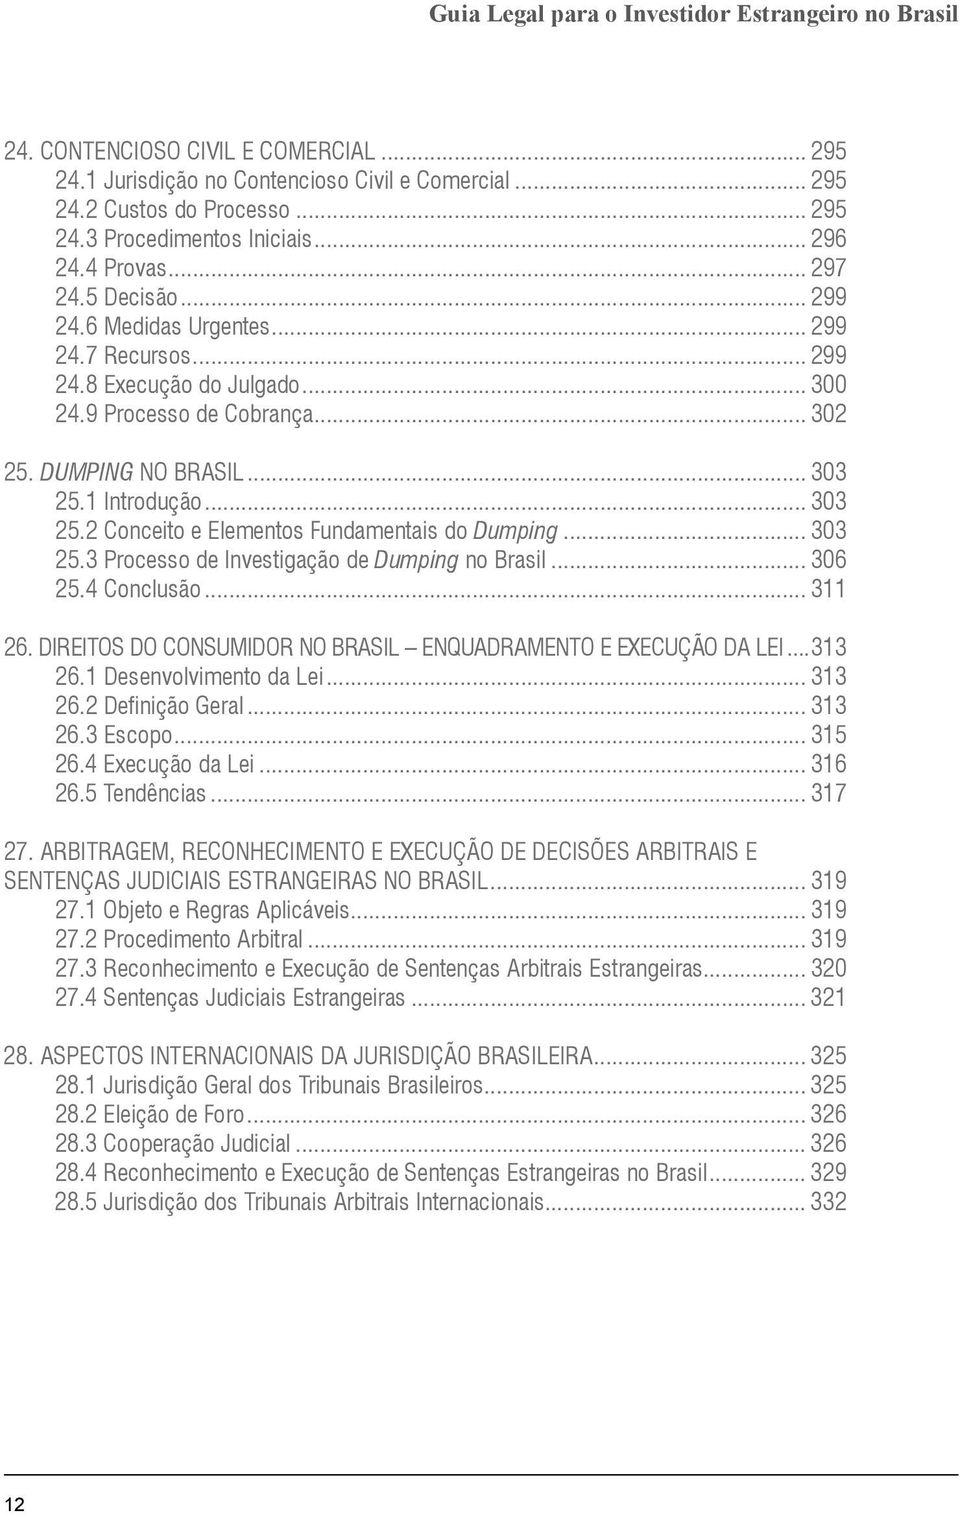 1 Introdução... 303 25.2 Conceito e Elementos Fundamentais do Dumping... 303 25.3 Processo de Investigação de Dumping no Brasil... 306 25.4 Conclusão... 311 26.